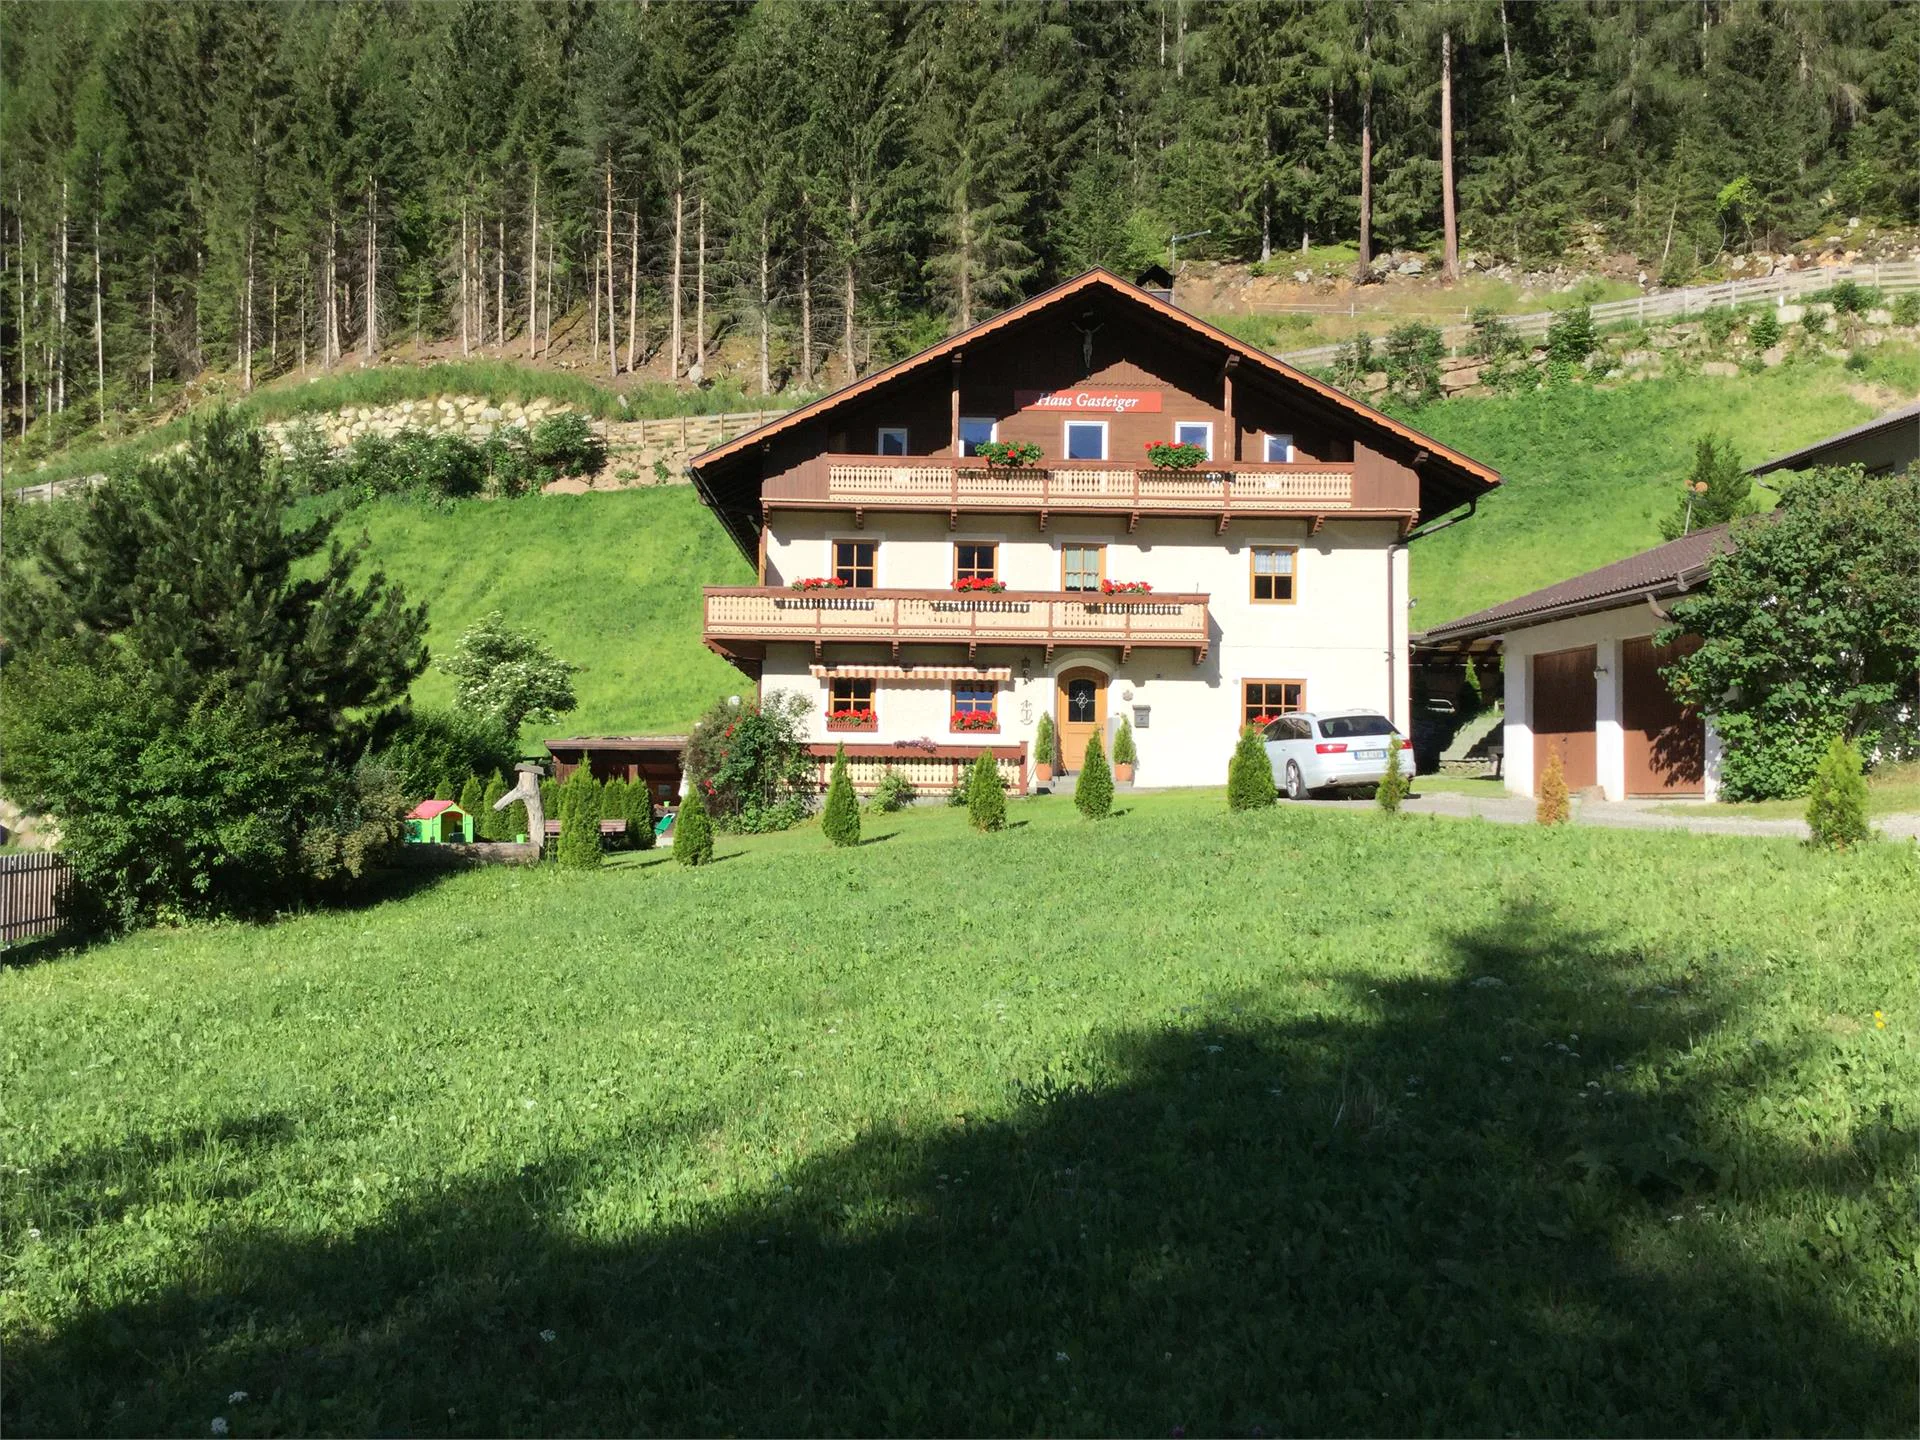 Gasteiger Haus Ahrntal/Valle Aurina 2 suedtirol.info